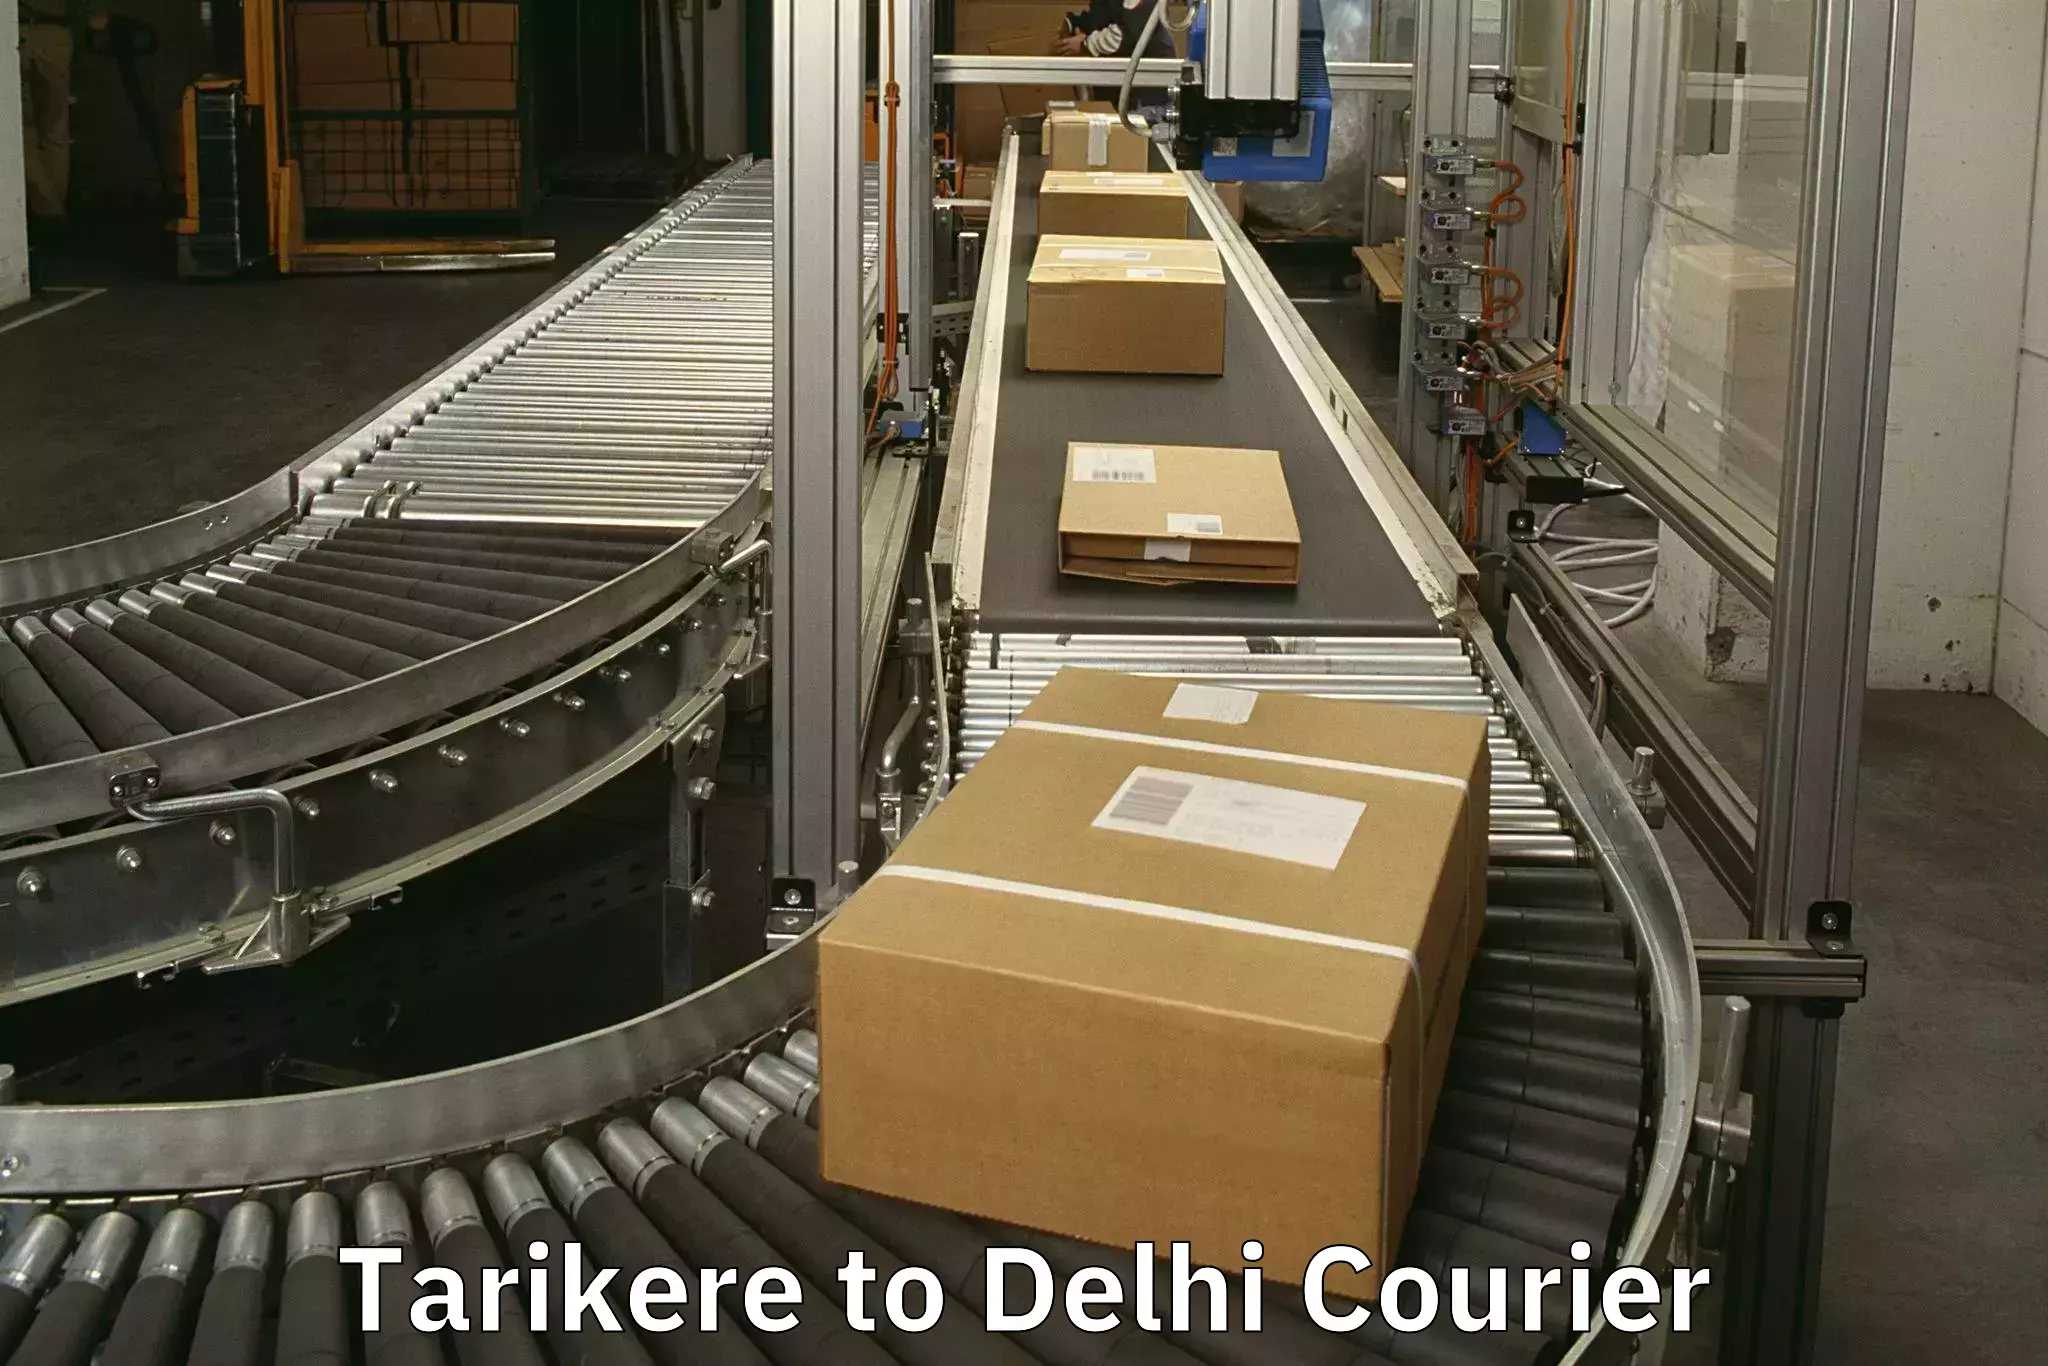 Door-to-door baggage service Tarikere to Delhi